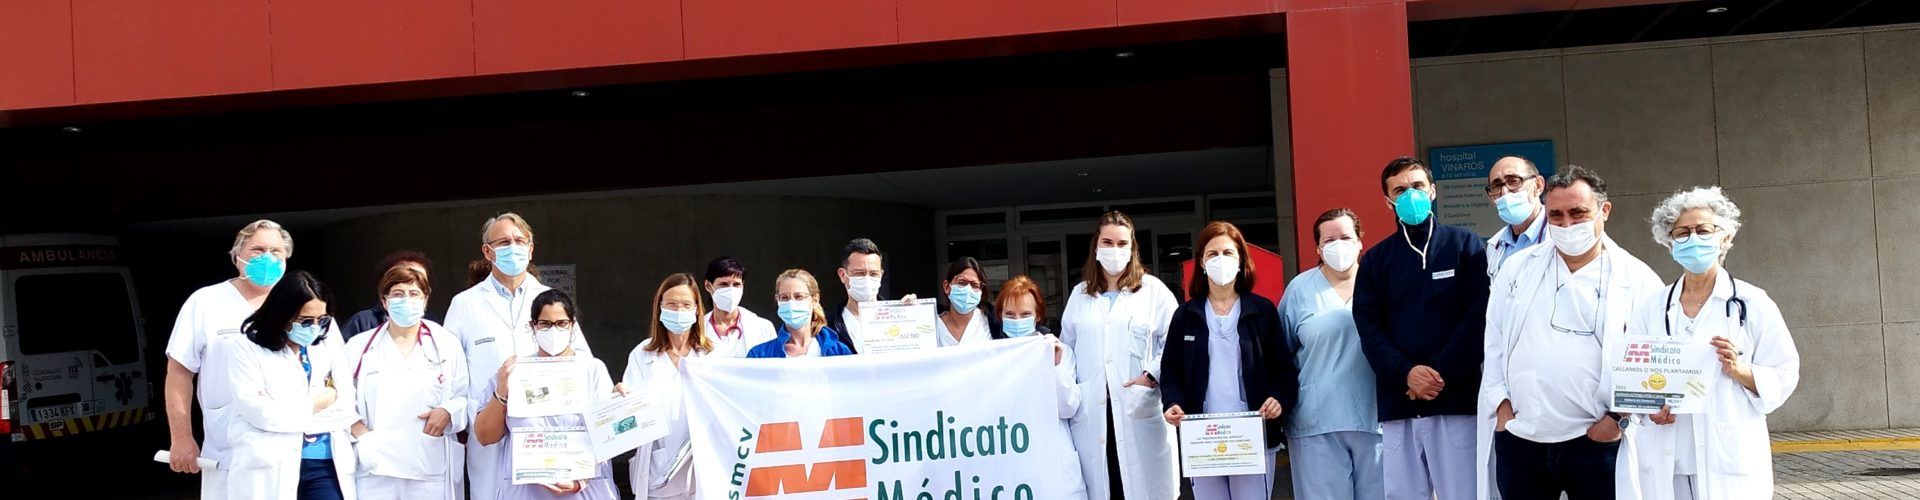 Nuevo día de huelga del personal médico en Vinaròs para el 3 de abril